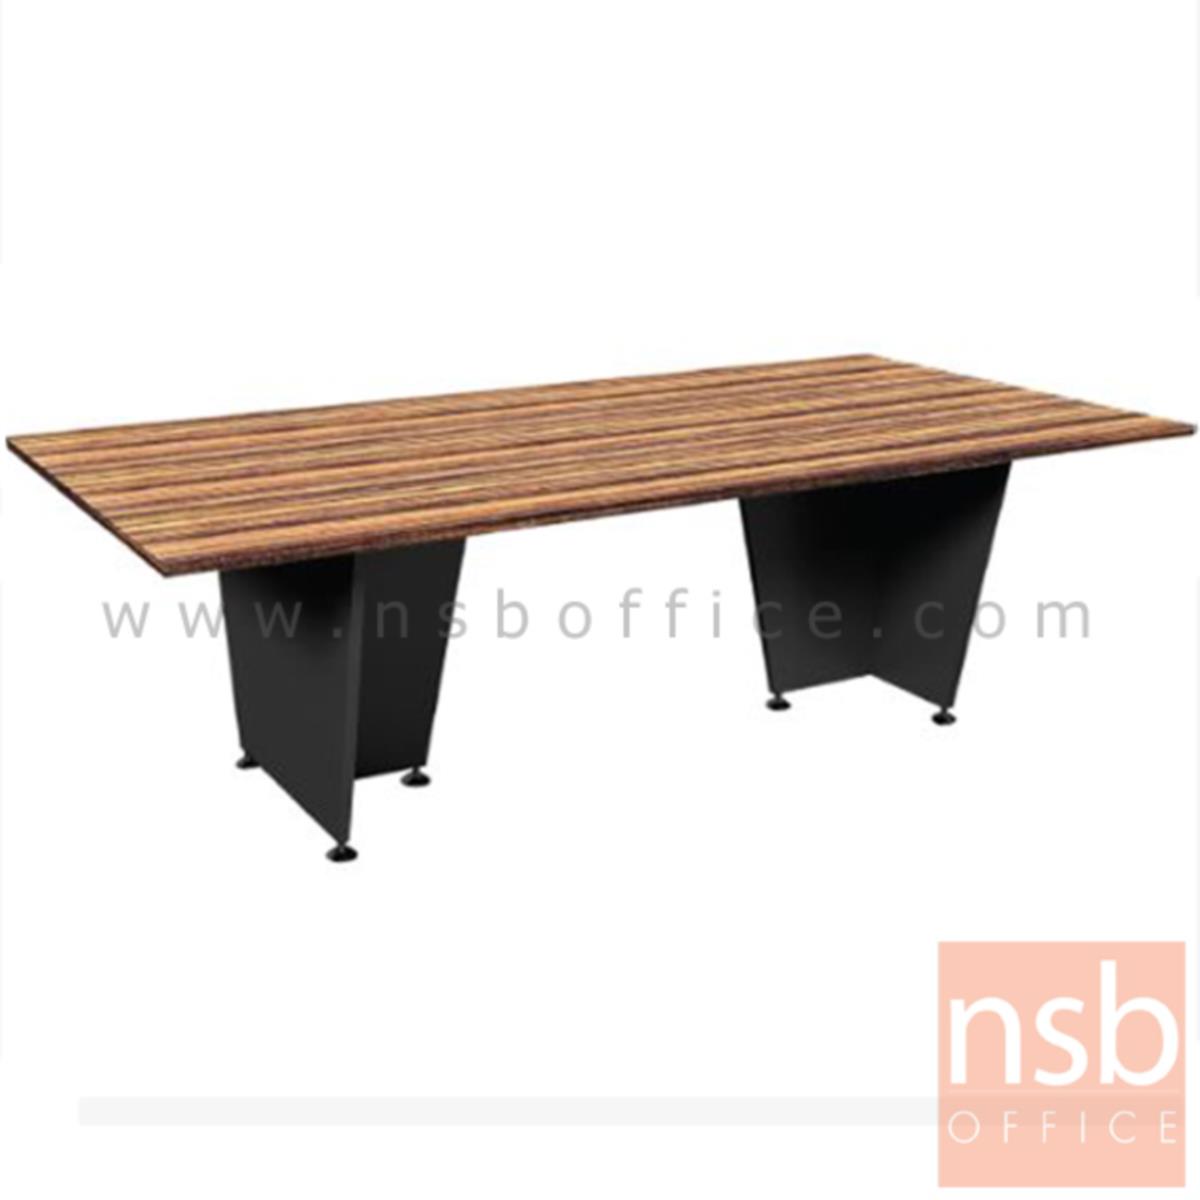 A26A022:โต๊ะประชุม  รุ่น Coralina (คอราลิน่า) ขนาด 240W cm. ขาไม้ สีลายไม้ซีบราโน่ตัดดำ ไม่มีขอบ